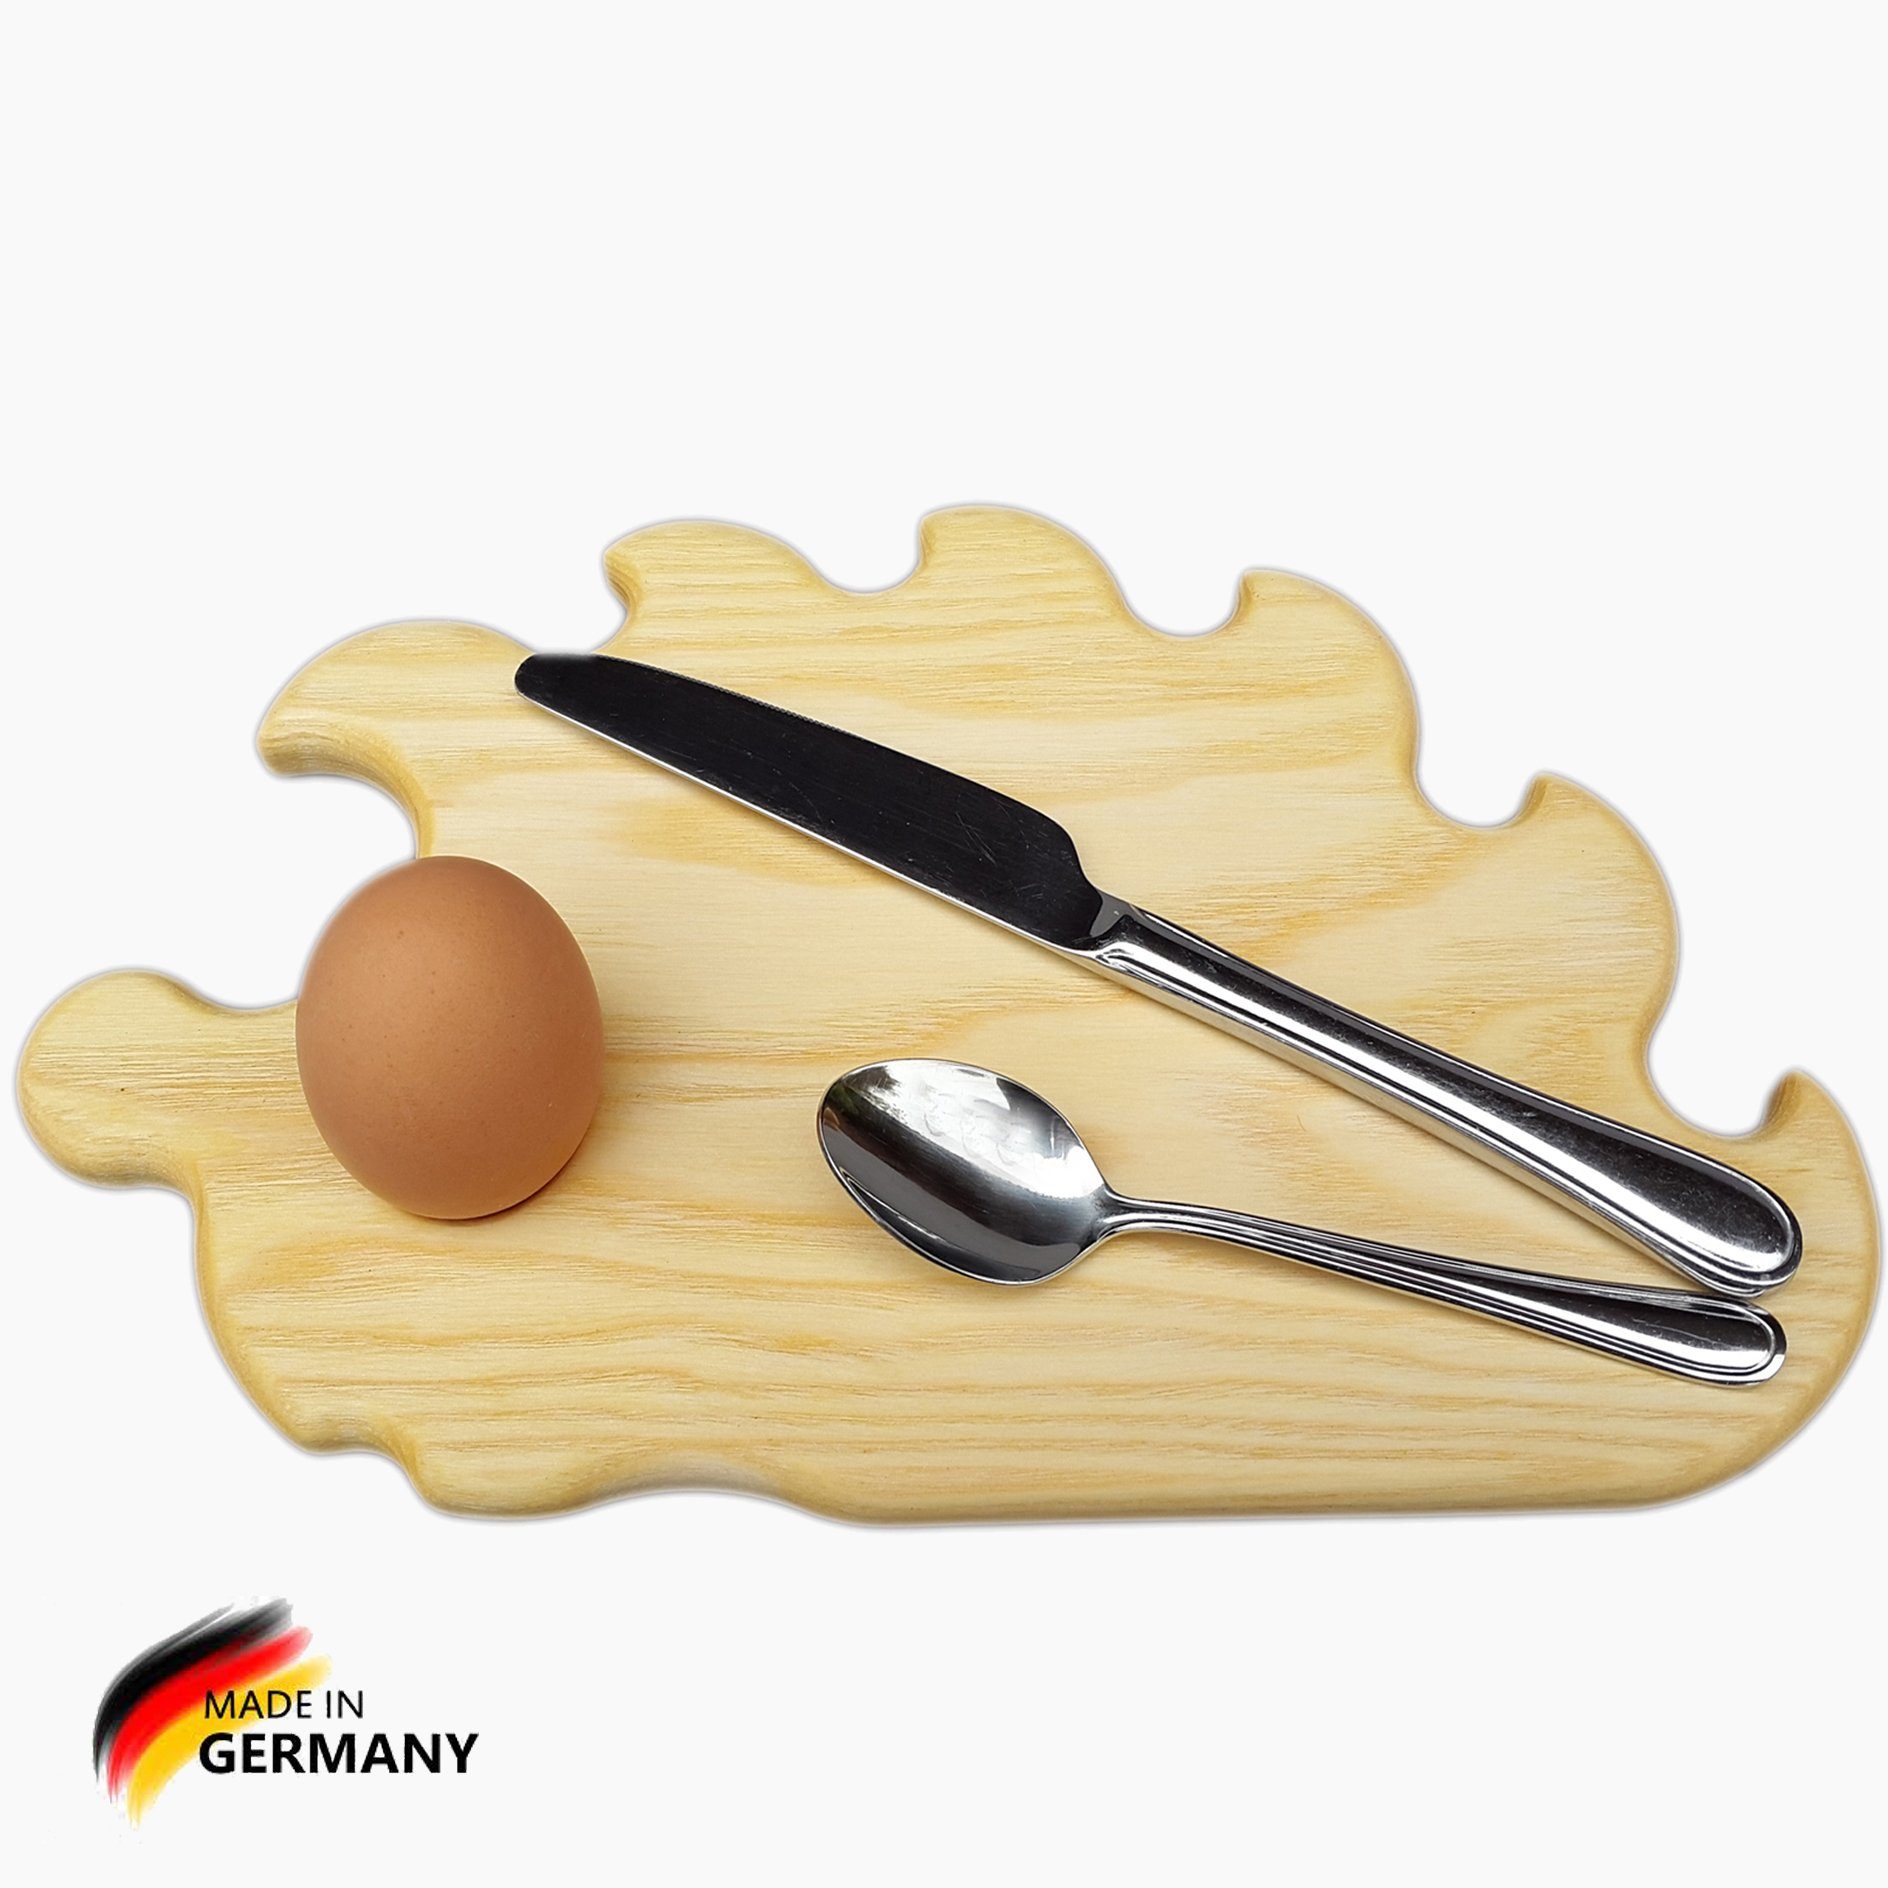 klein, mit Eschenholz, in Germany Igel Madera Spielzeuge Eierbecher,Made Frühstücksbrett Frühstücksbrettchen